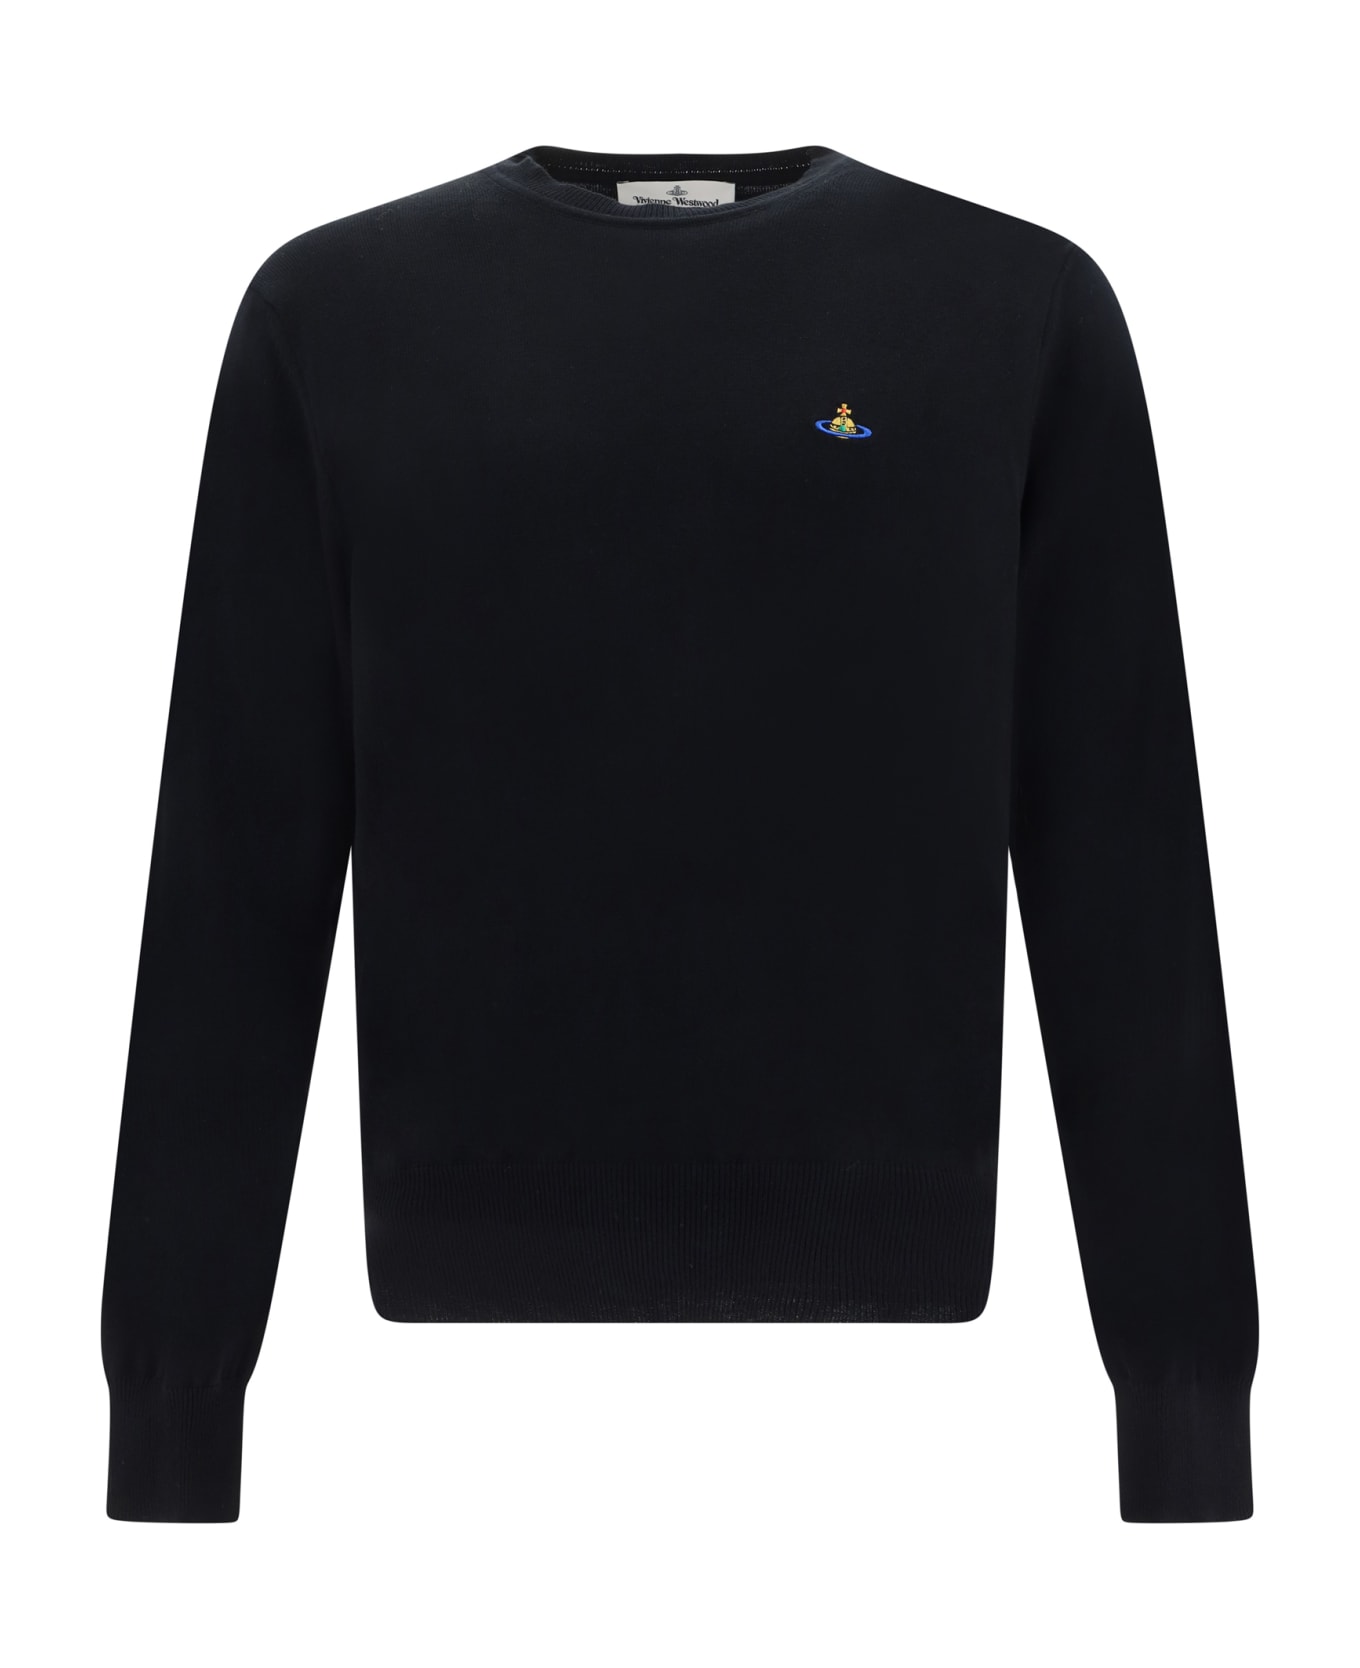 Vivienne Westwood Sweater - Black